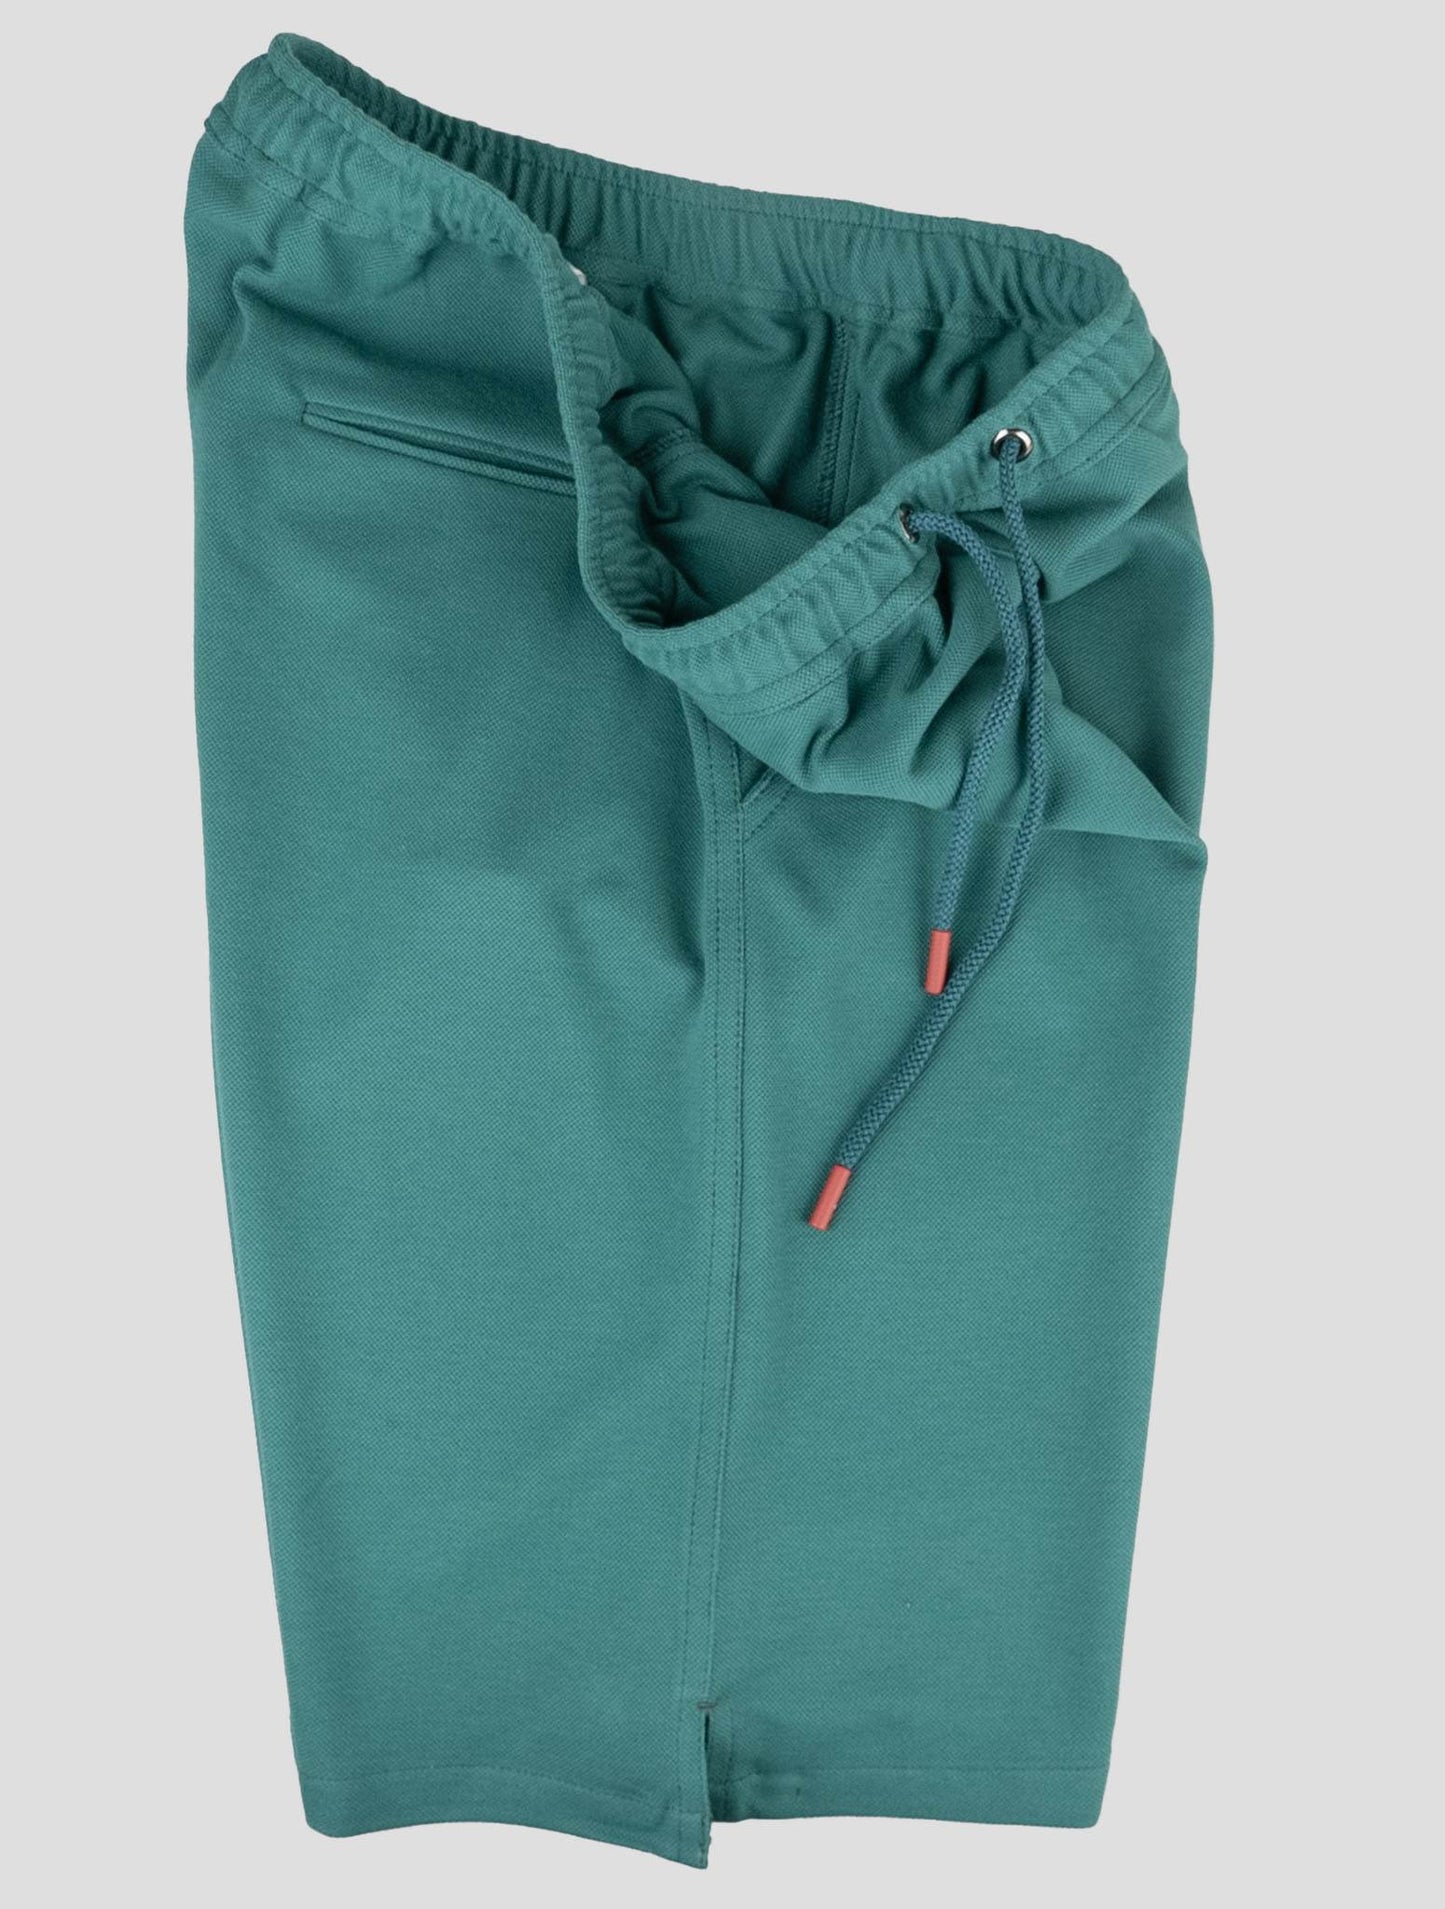 Pantalones cortos de algodón verde de Kiton